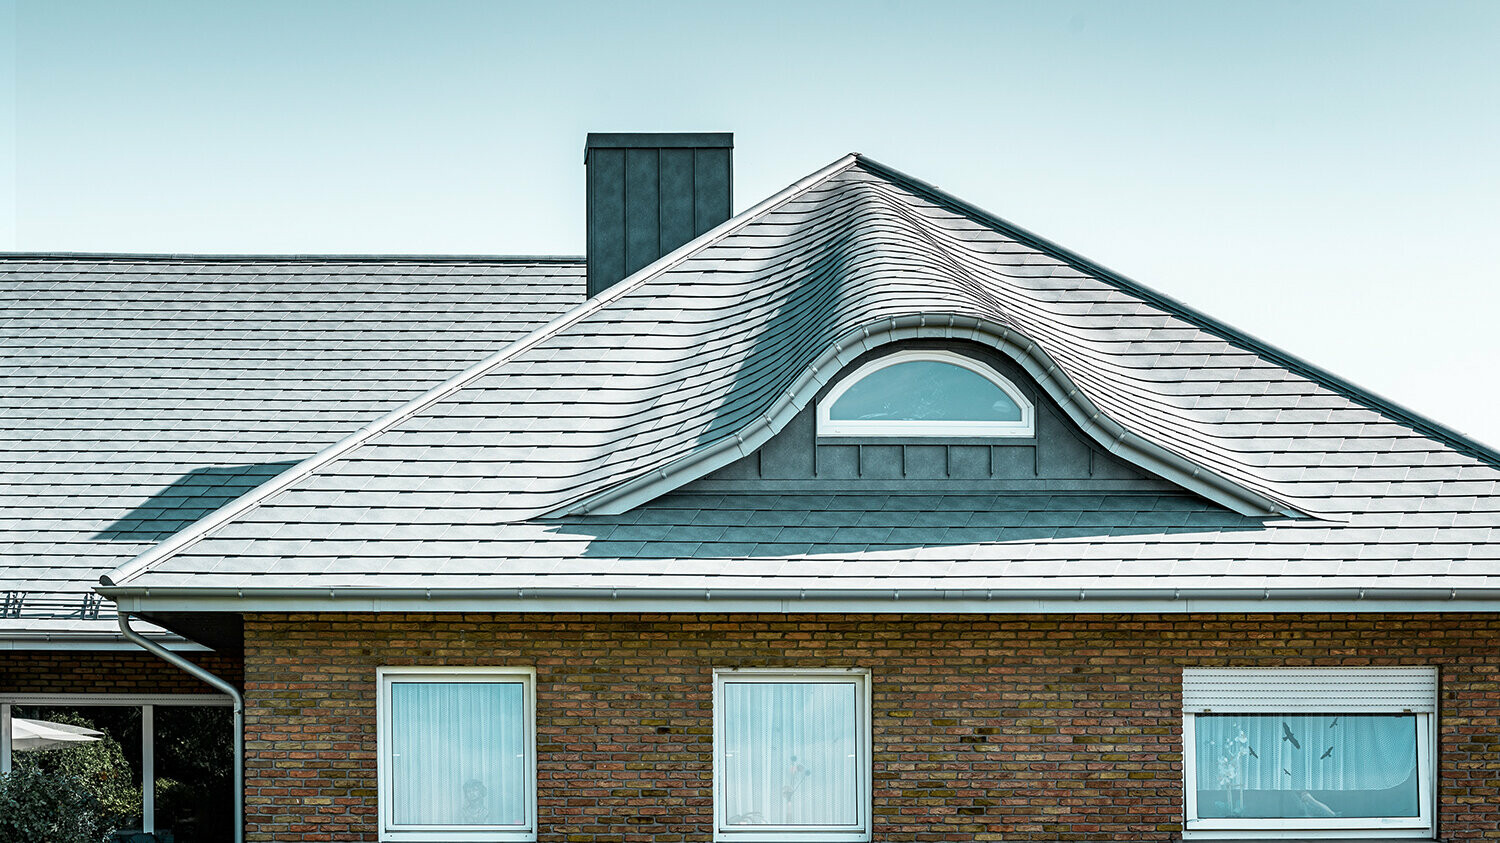 Enodružinska hiša iz 70-ih let prejšnjega stoletja s streho iz aluminijastih strešnih skodl v barvi P.10 kamnito siva z vijugasto zaobljeno frčado z okroglim oknom